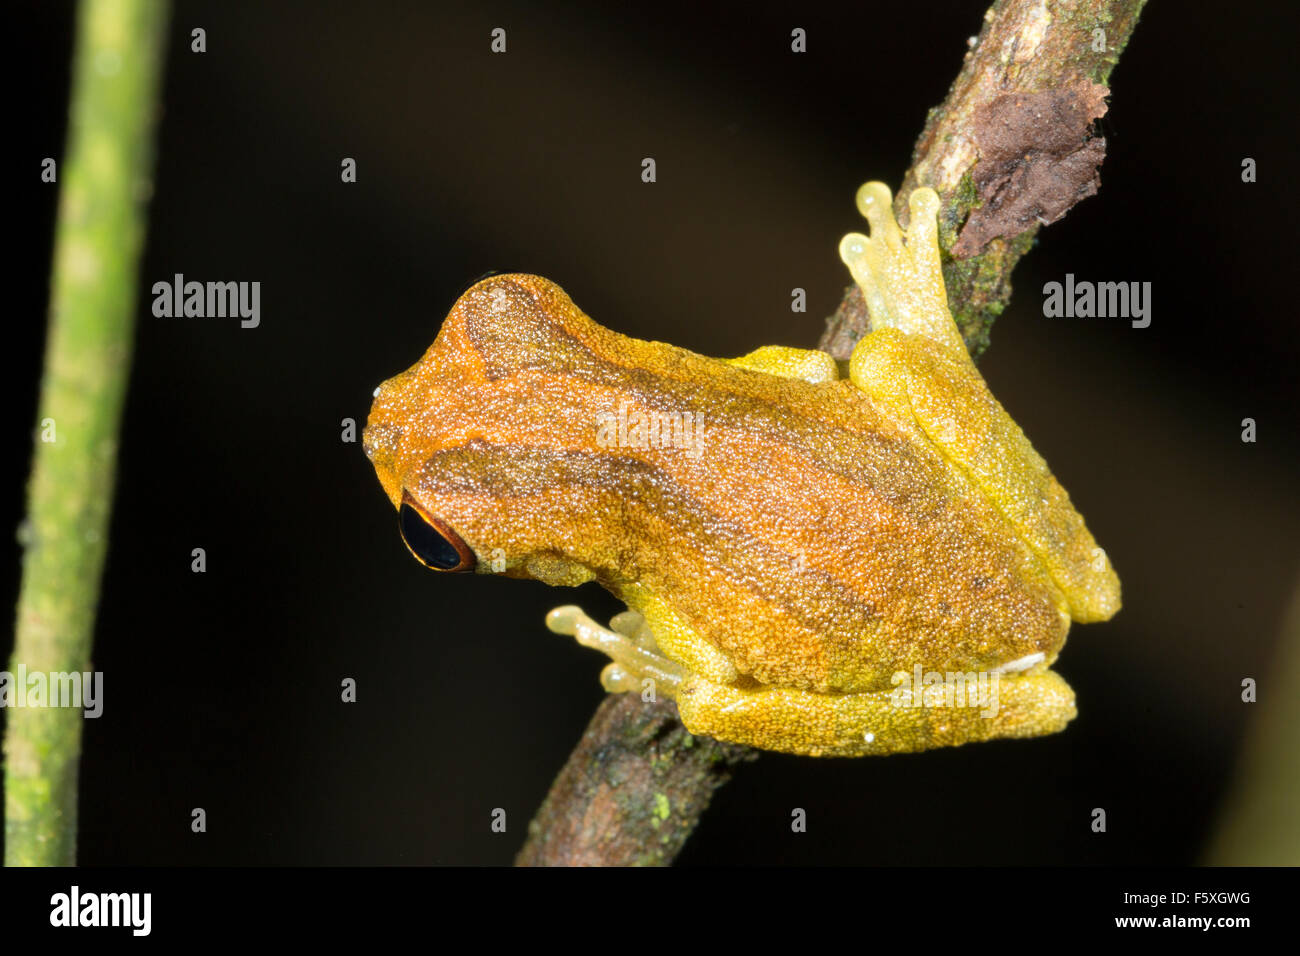 Rainette à tête courte (Dendropsophus parviceps) sur une branche dans la forêt tropicale, l'Équateur Banque D'Images